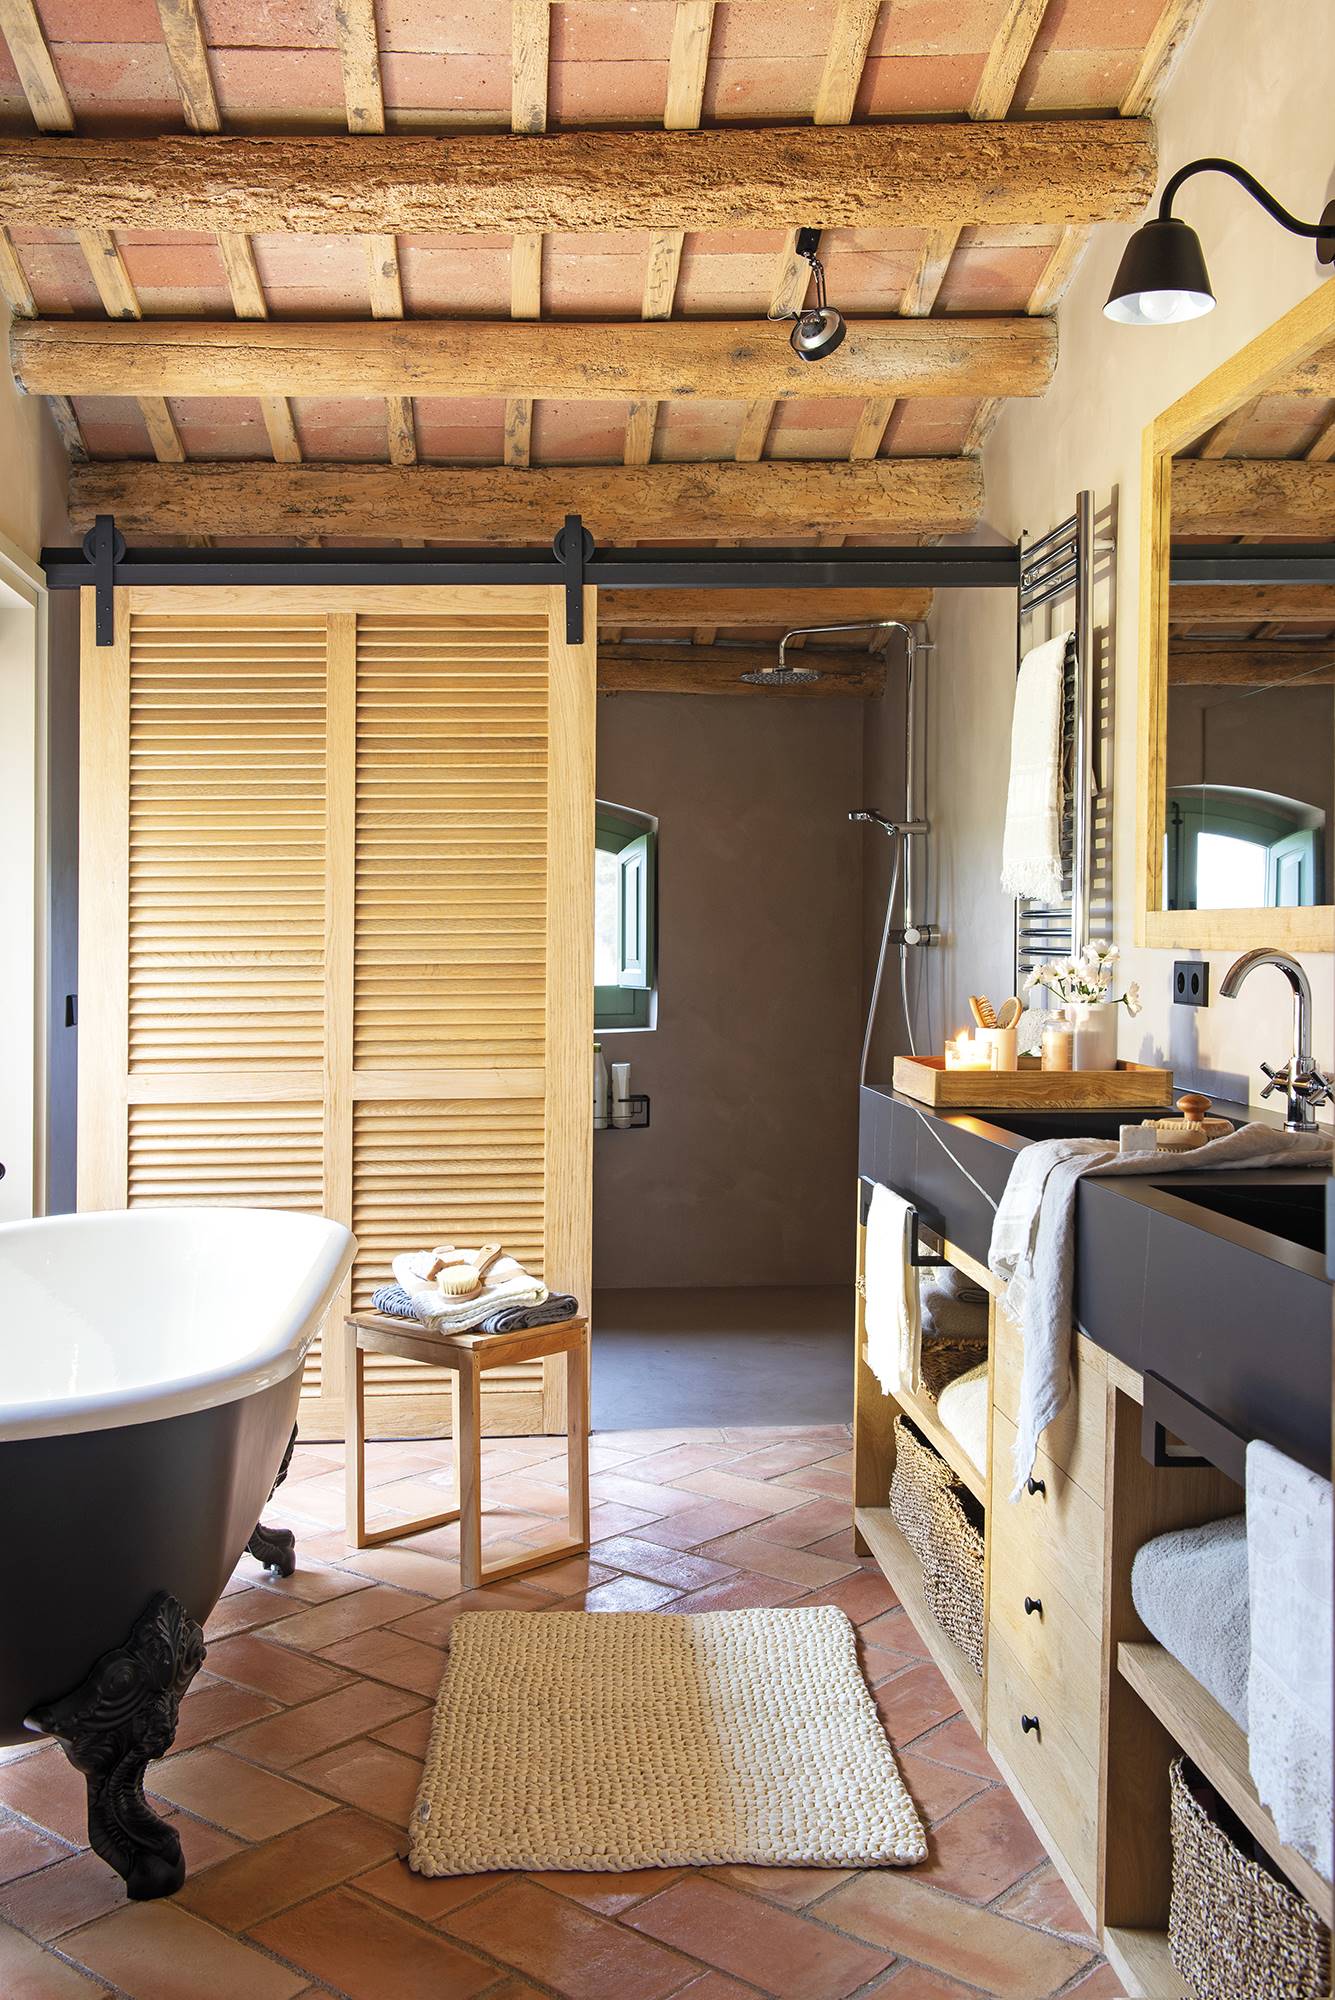 Baño de estilo rústico con bañera y puerta de granero. 